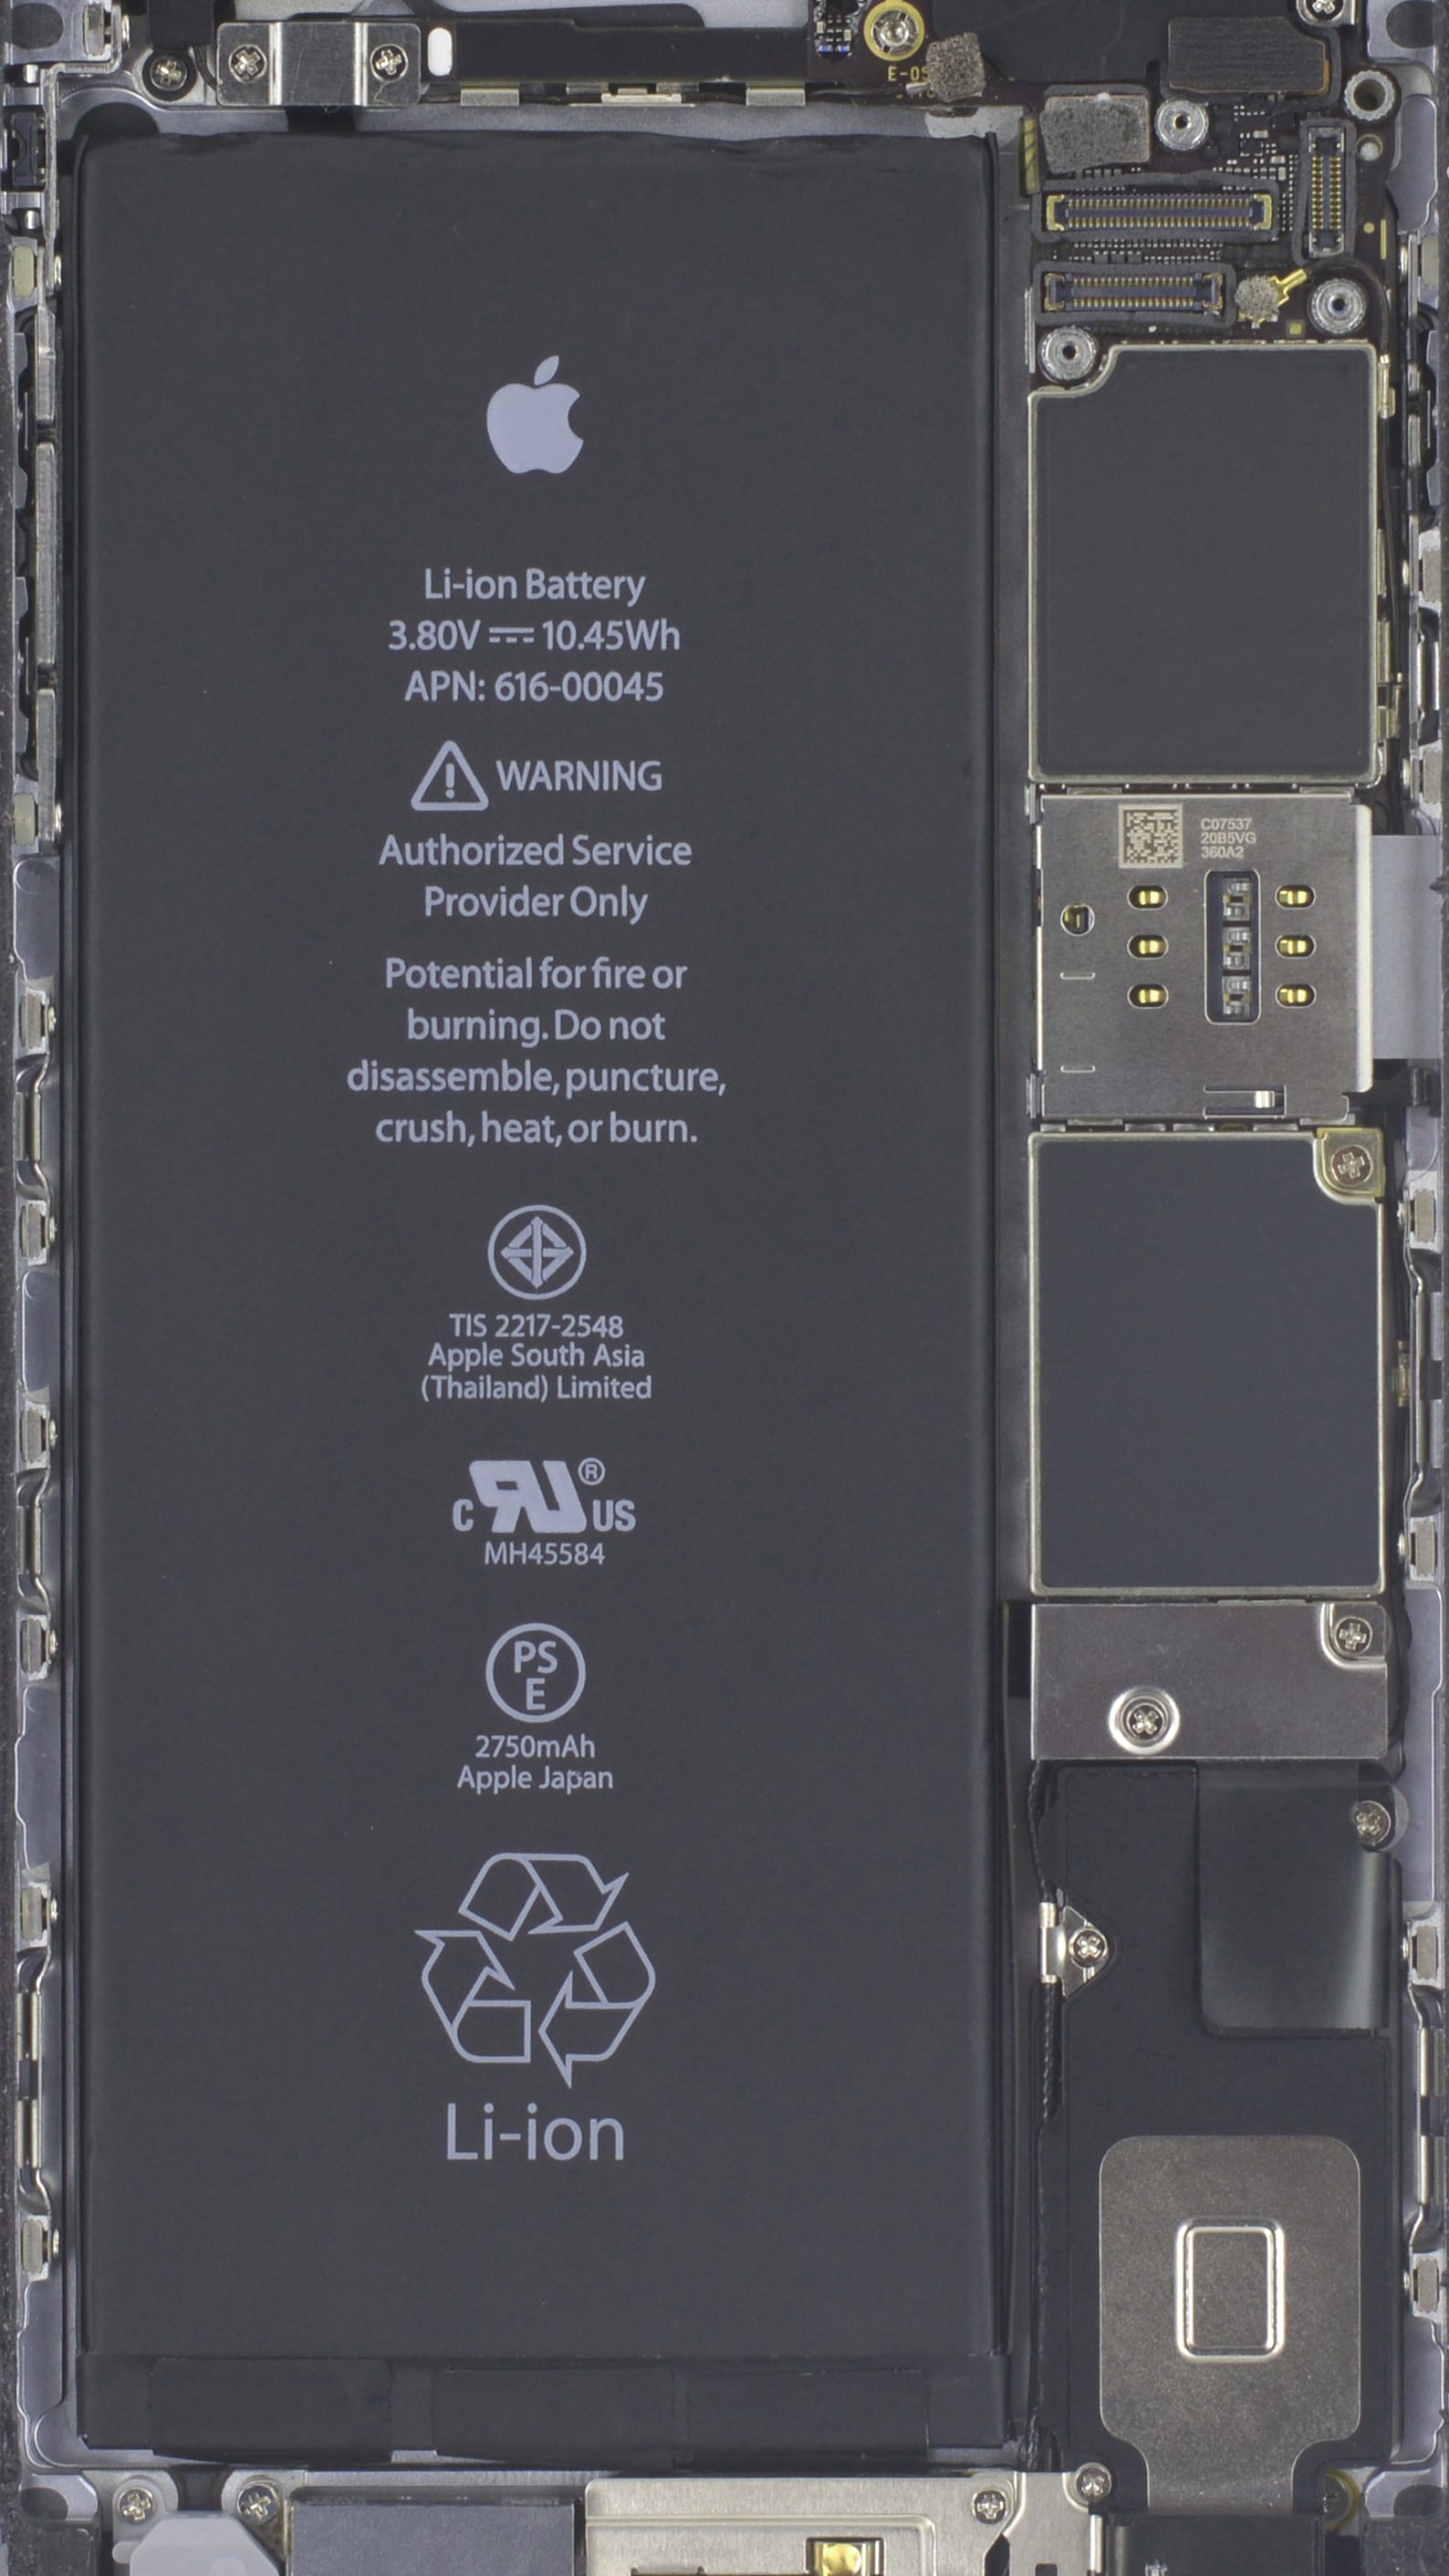 Iphone 4 Battery - HD Wallpaper 